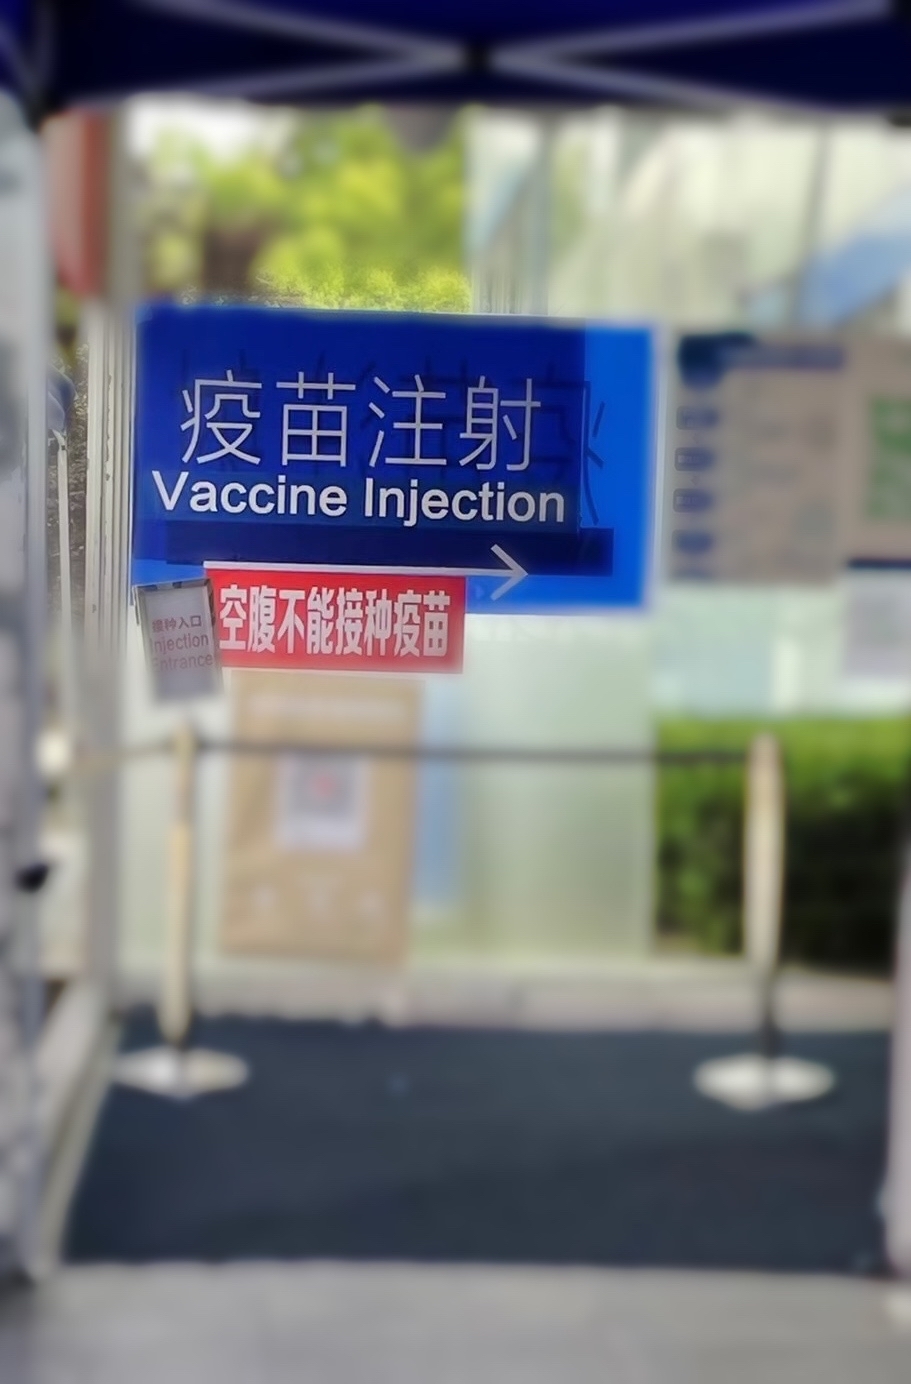 上海・「空腹時のワクチン接種は不可」